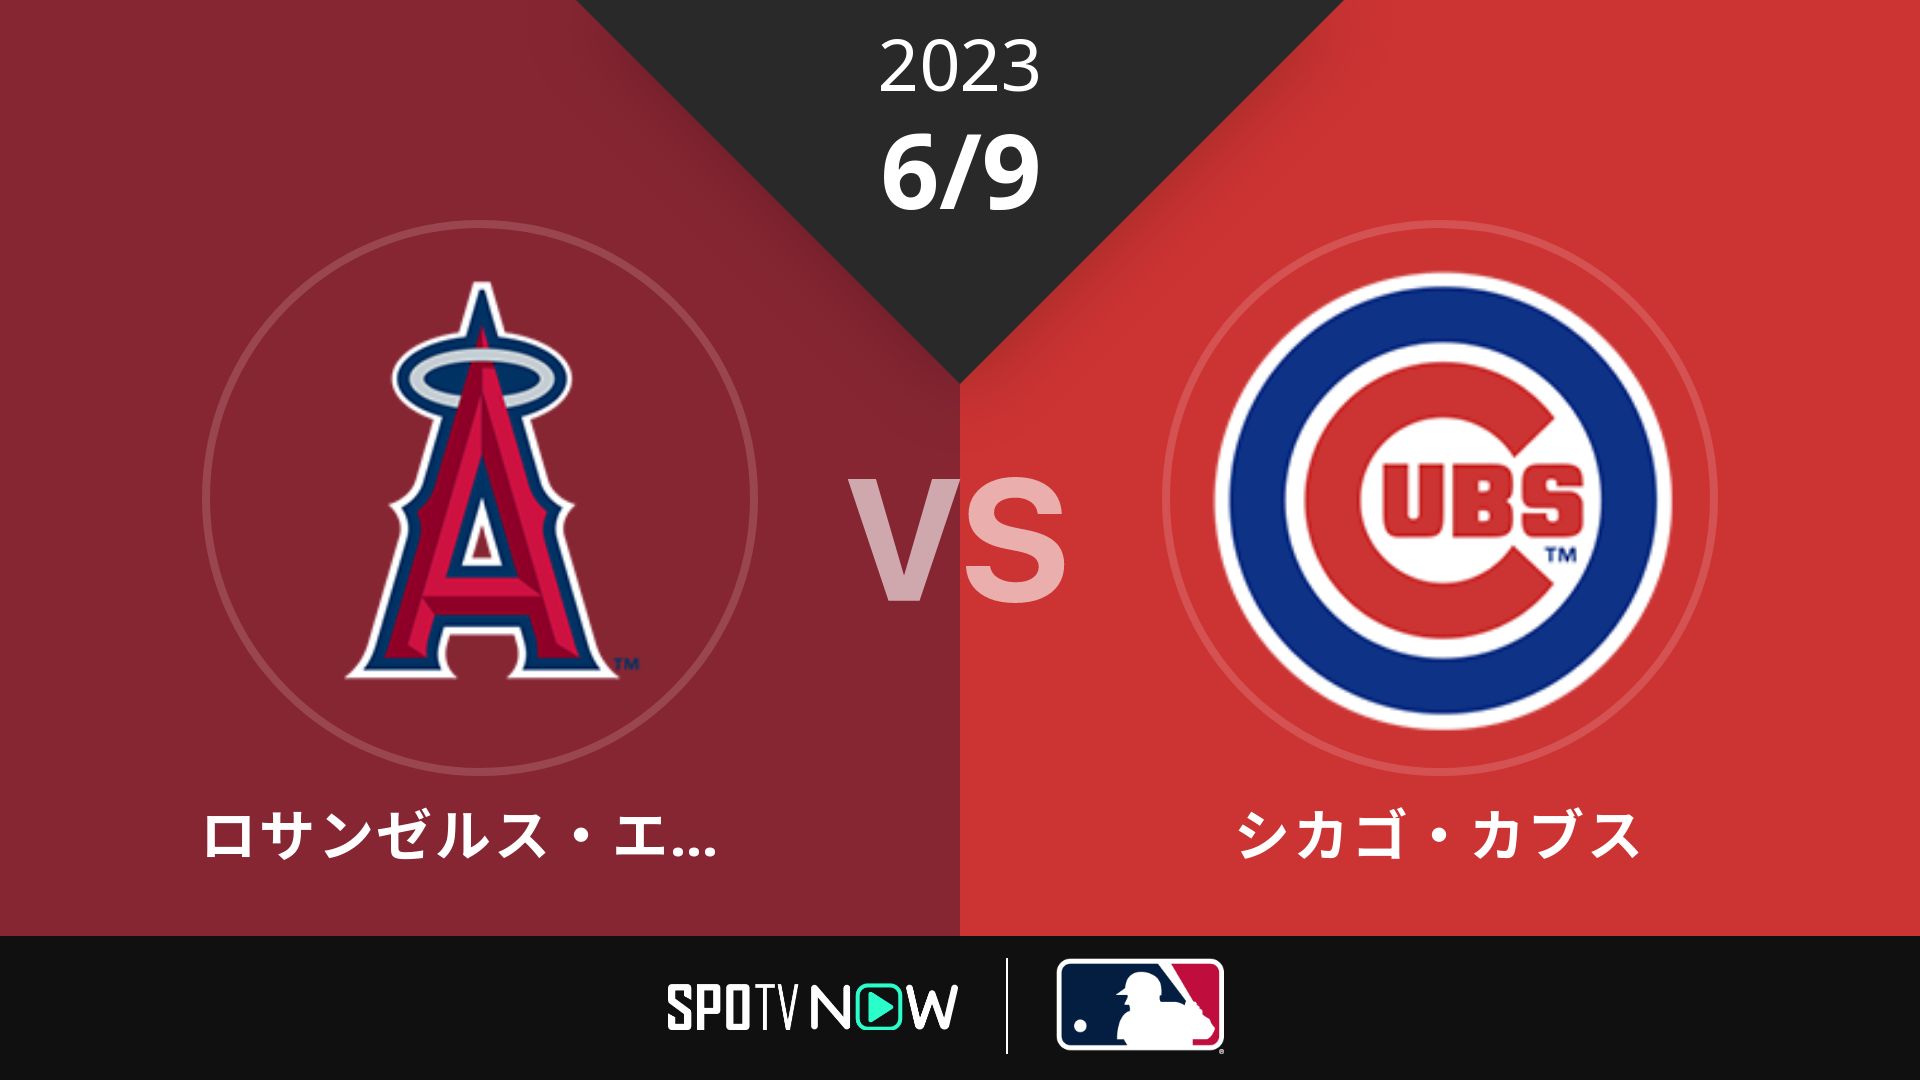 2023/6/9 エンゼルス vs カブス [MLB]